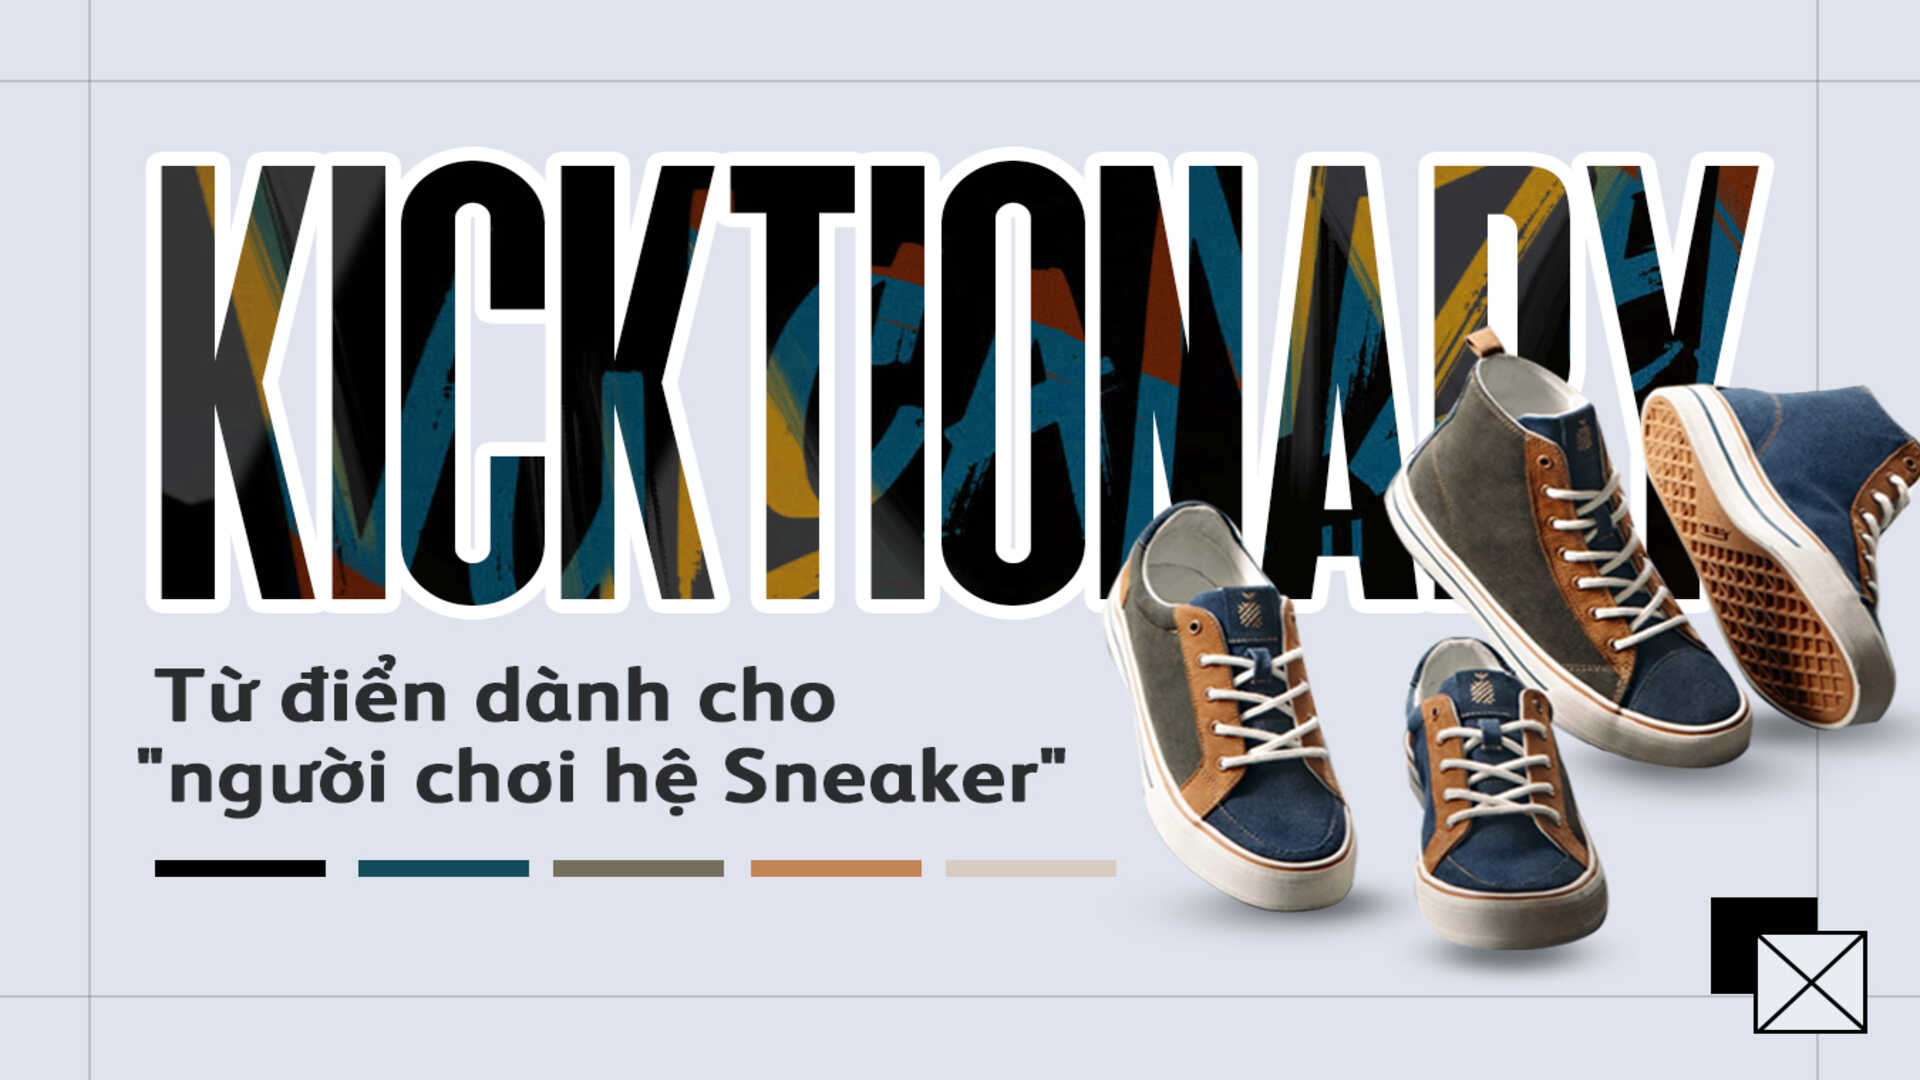 Bỏ túi bộ thuật ngữ dành cho những người “chơi” hệ Sneaker